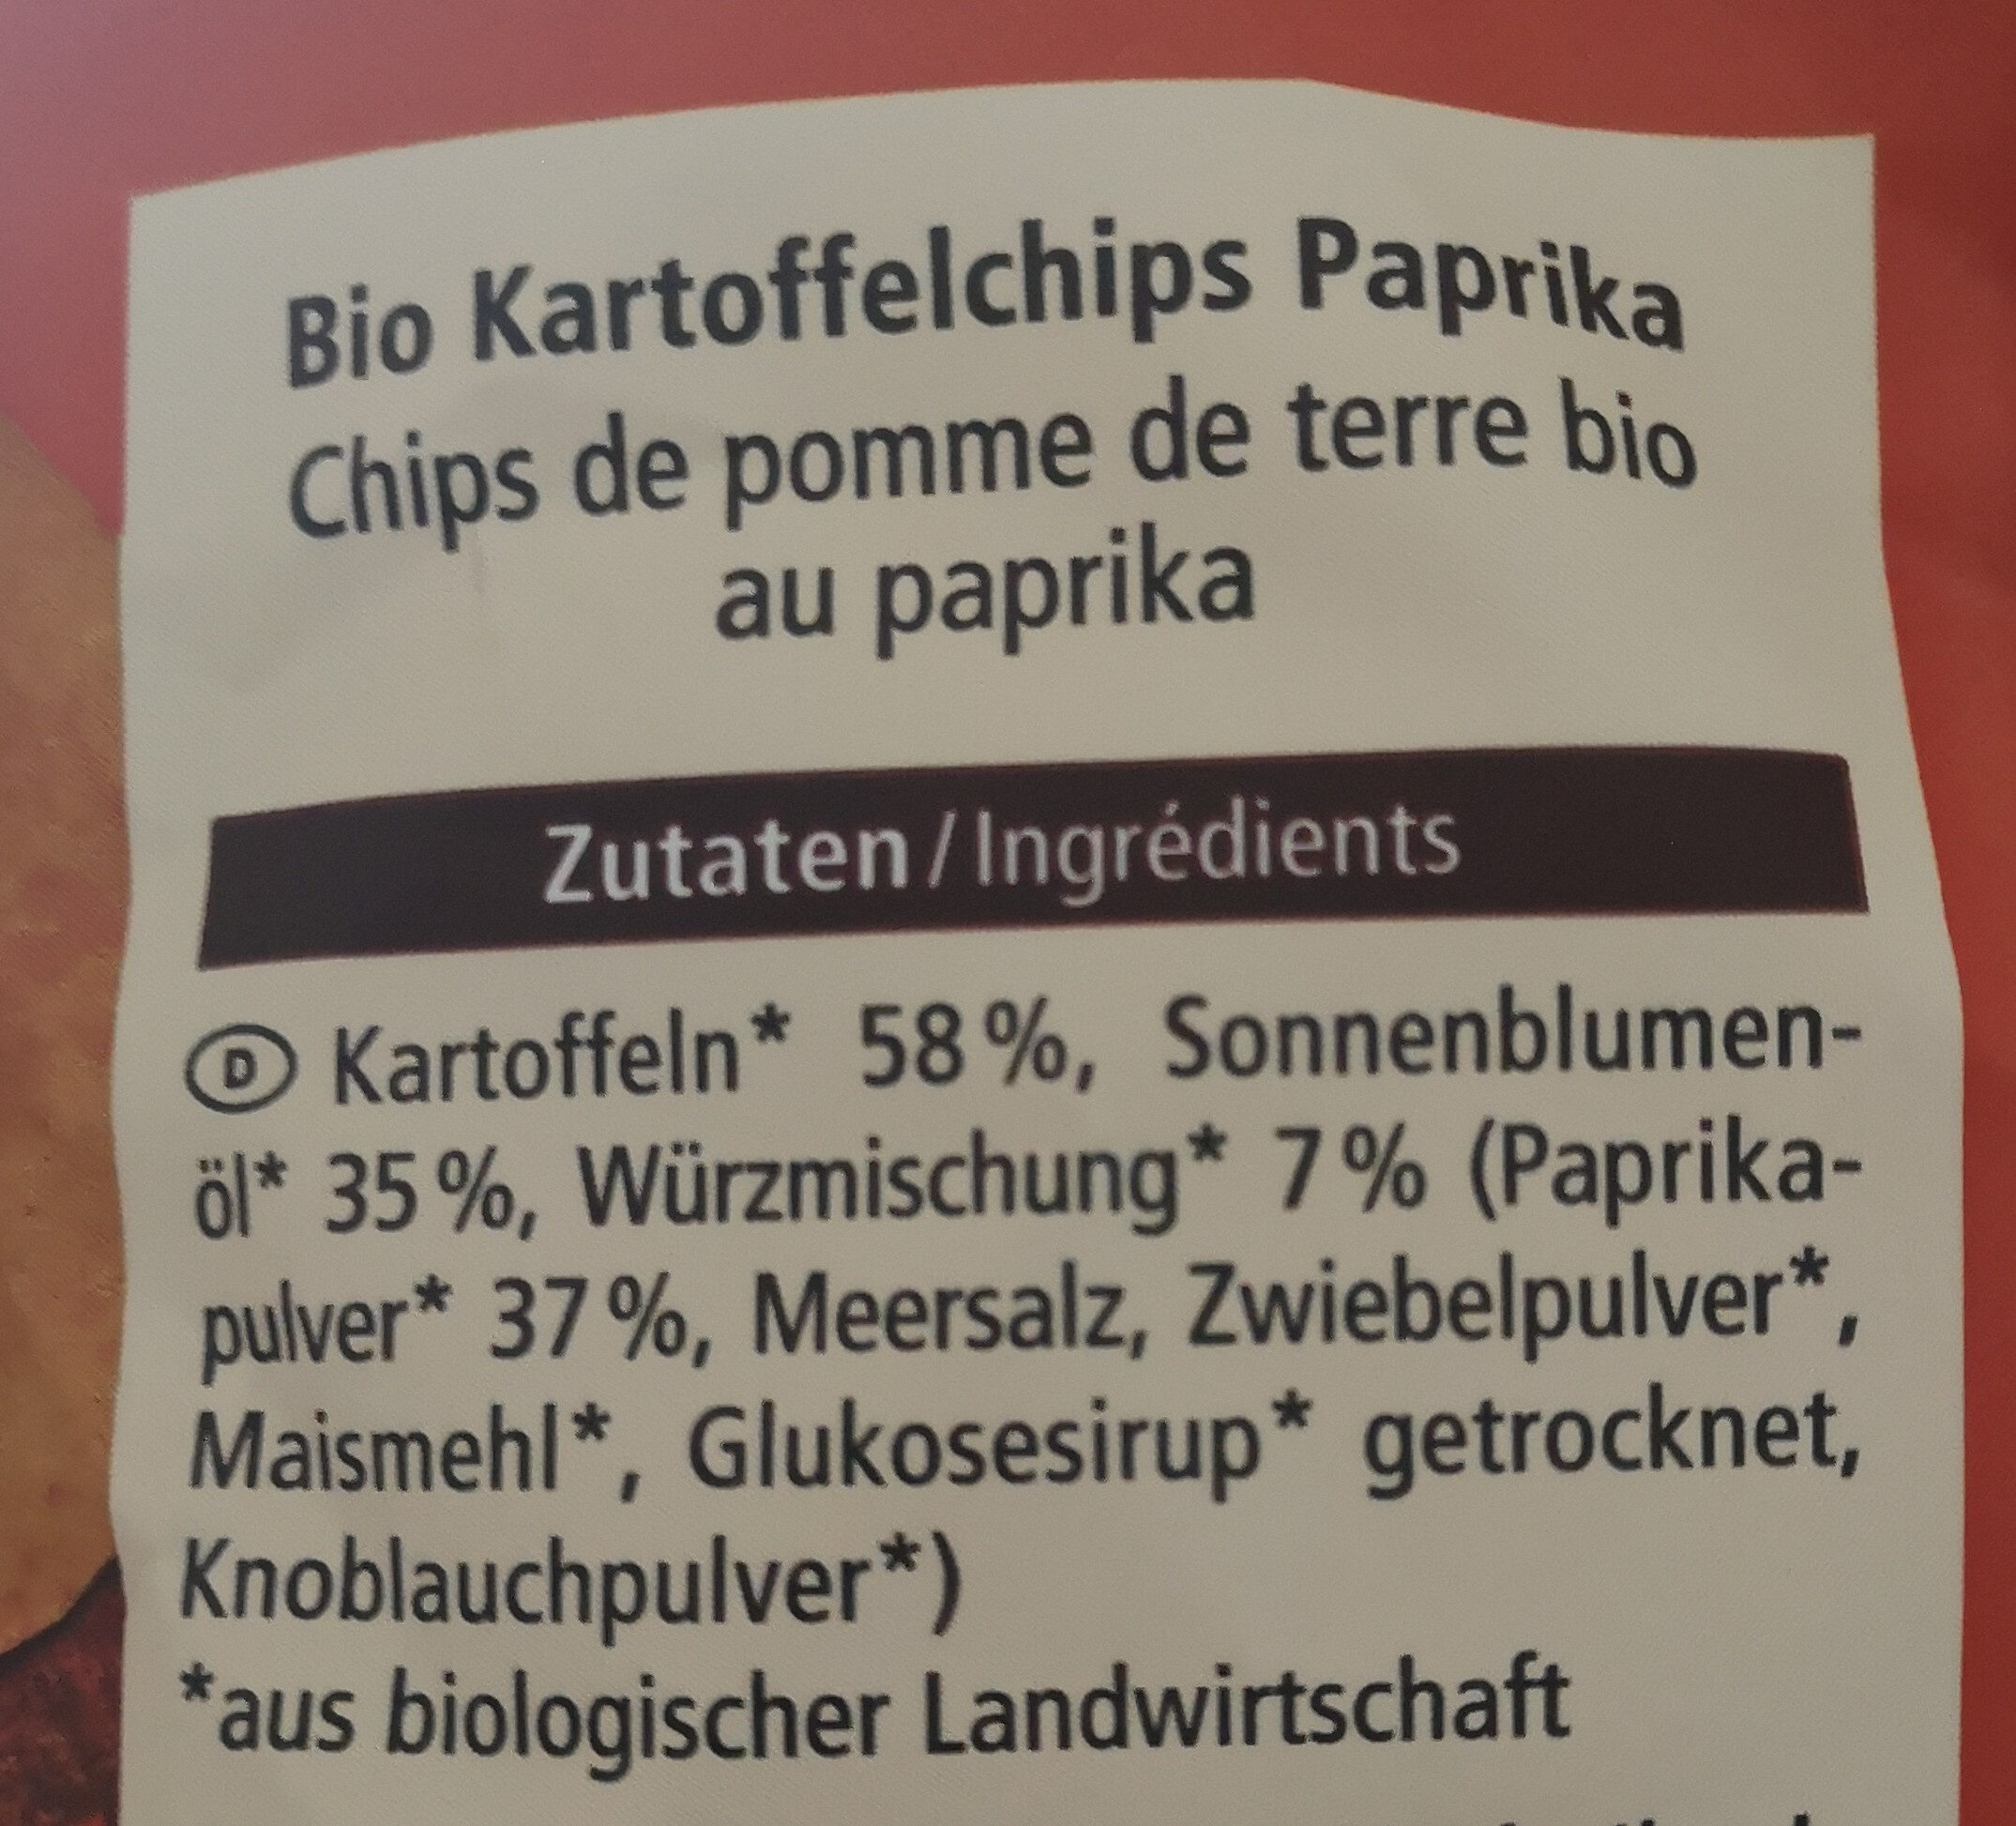 Bio Kartoffelchips Paprika - Zutaten